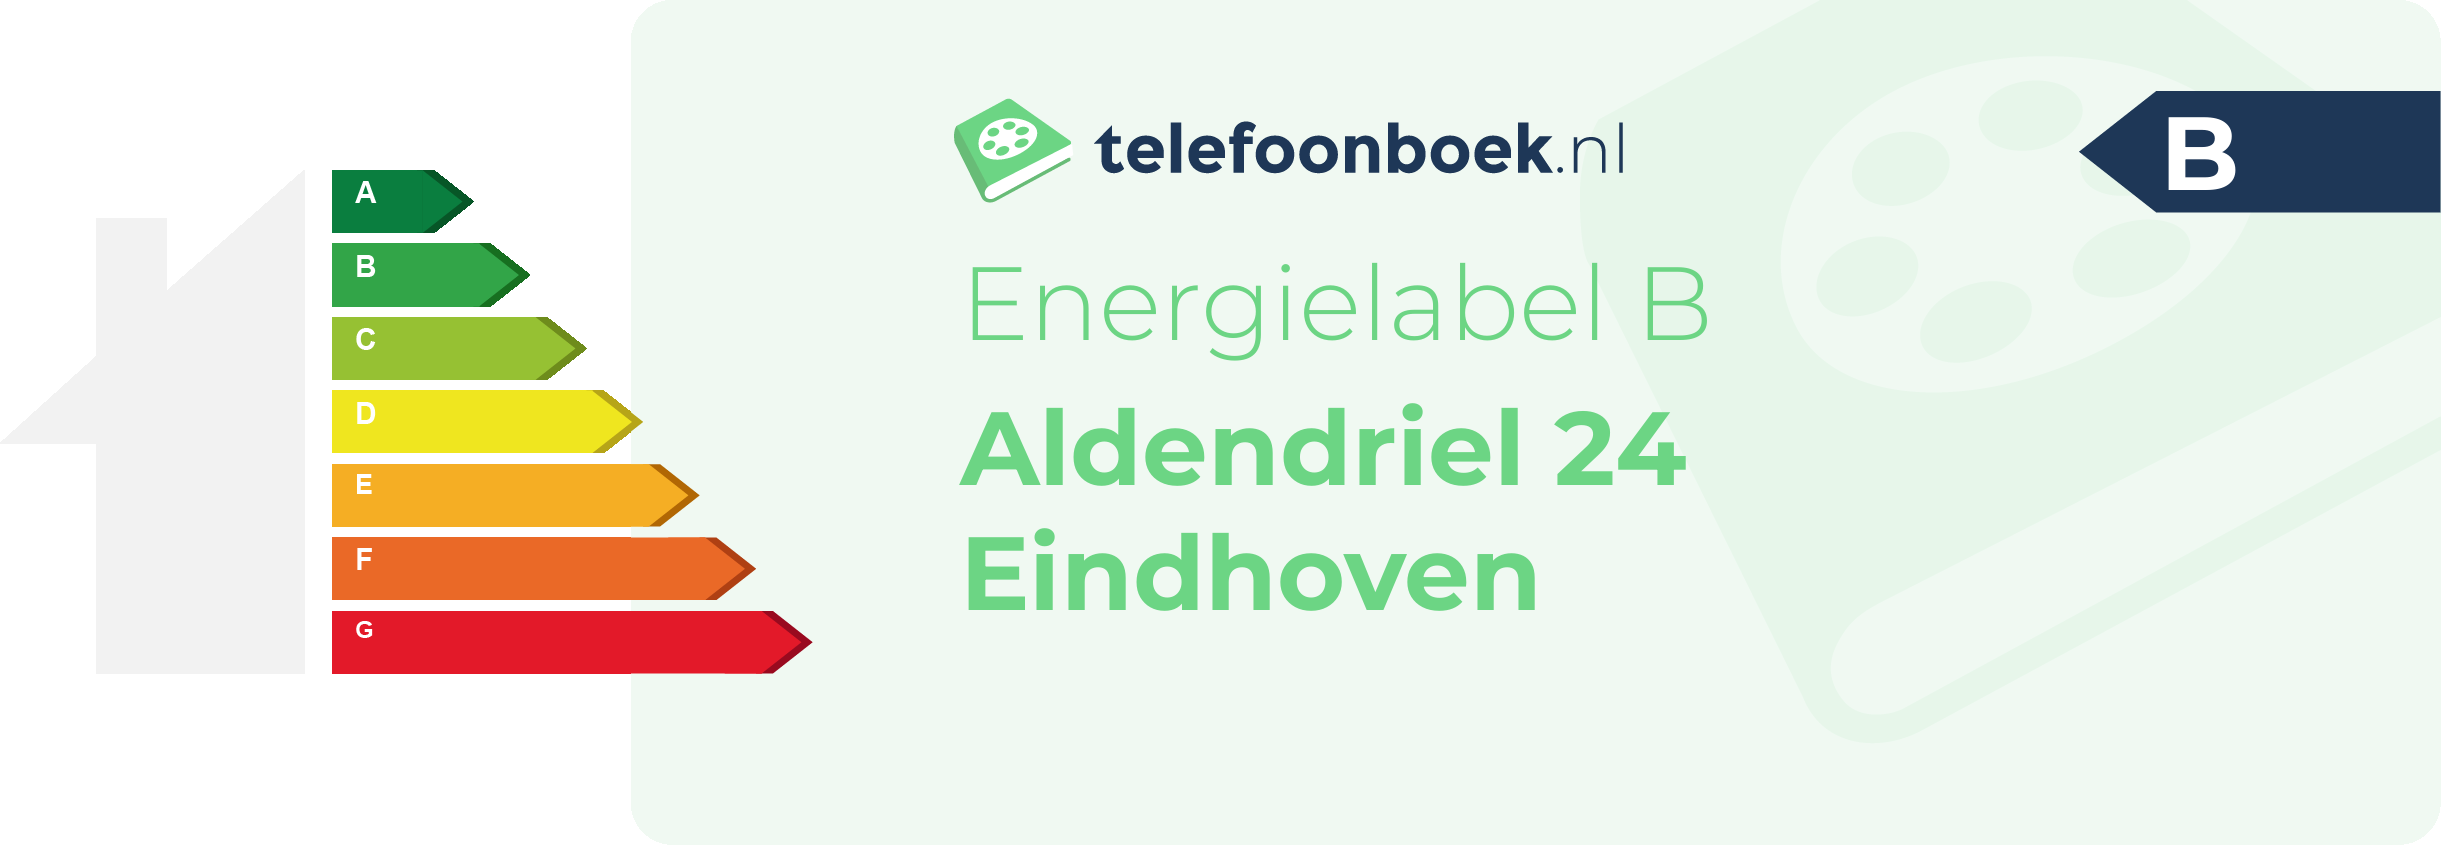 Energielabel Aldendriel 24 Eindhoven